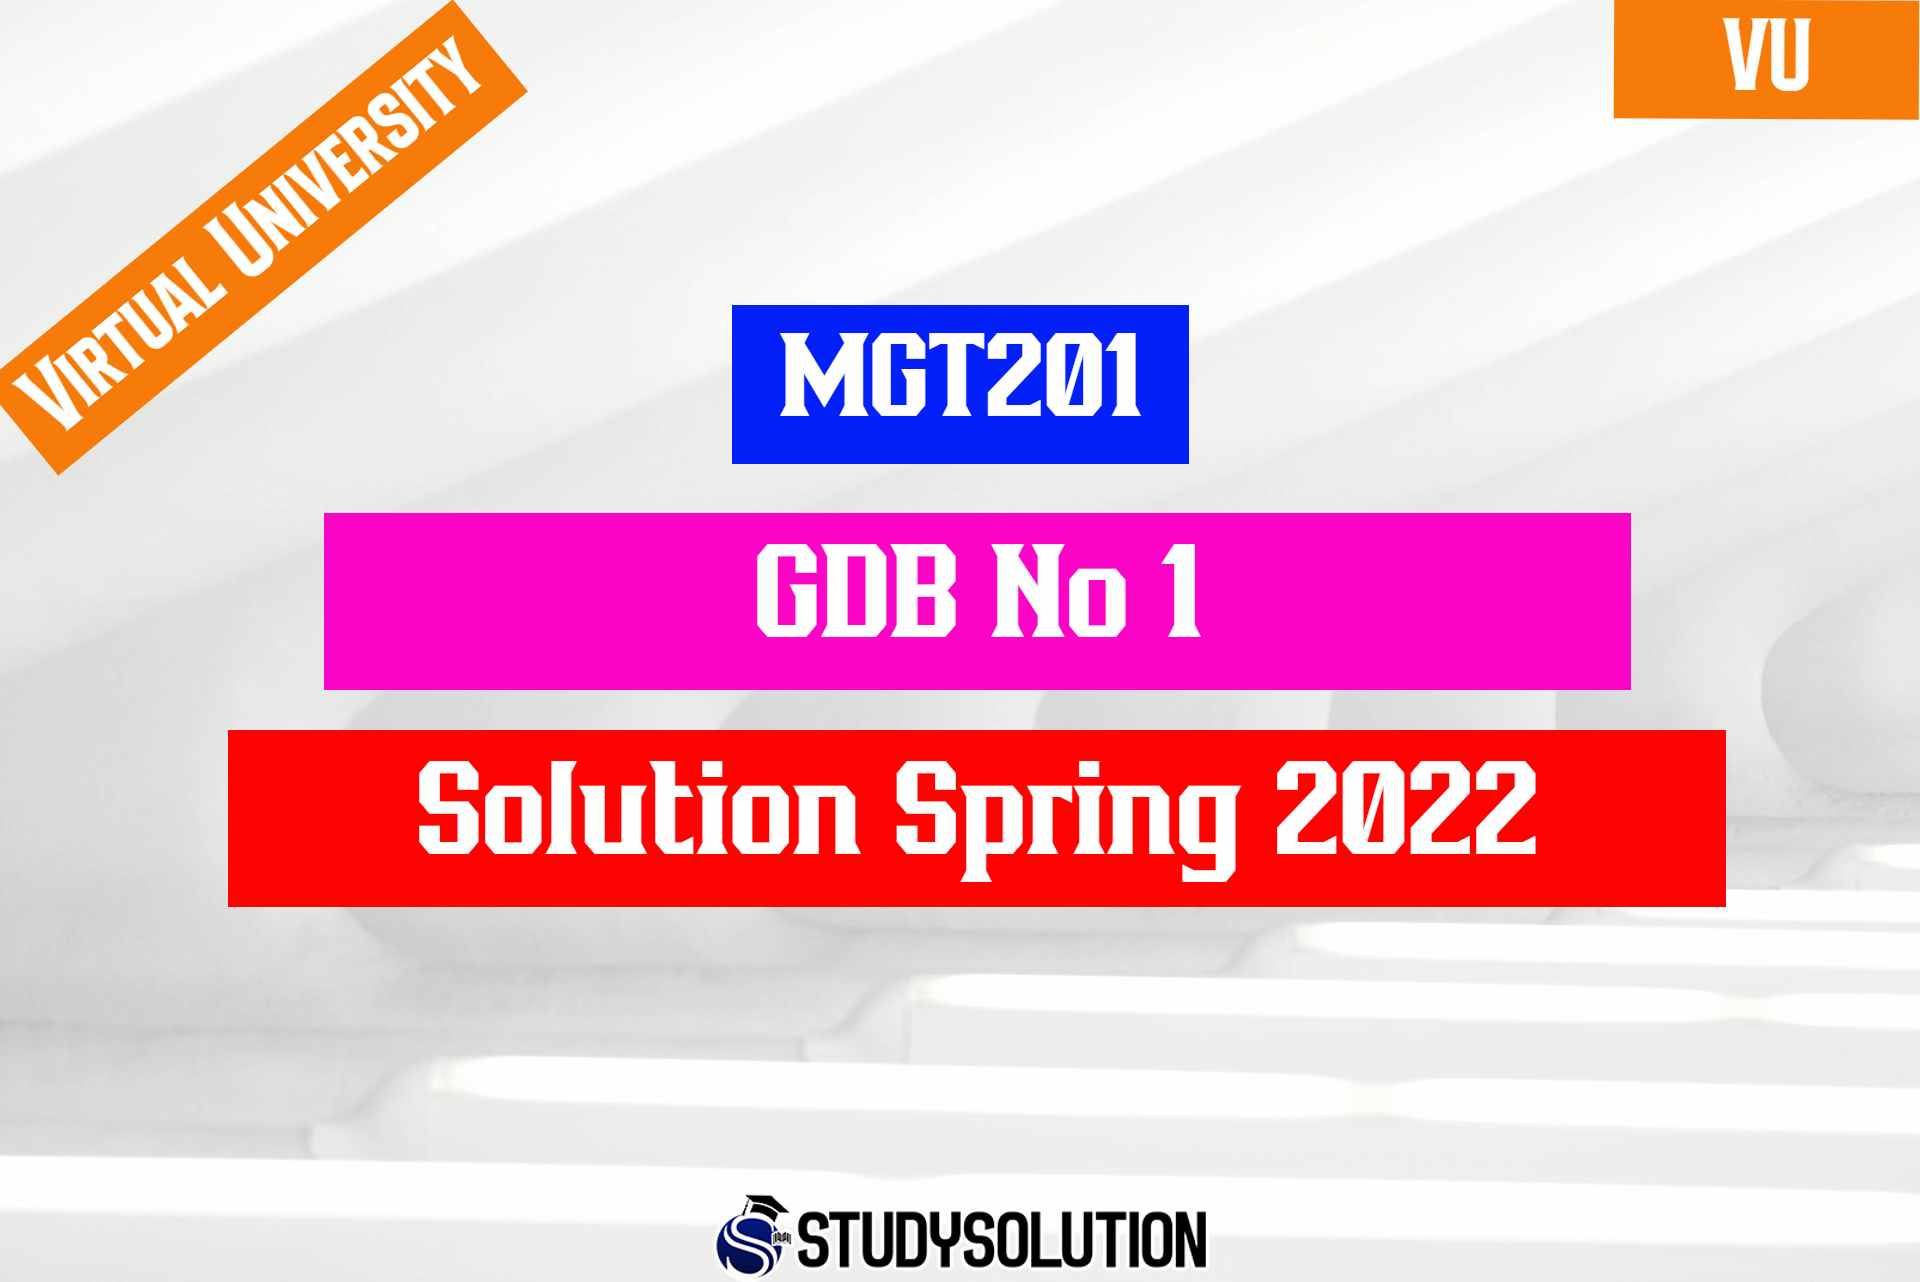 MGT201 GDB No 1 Solution Spring 2022